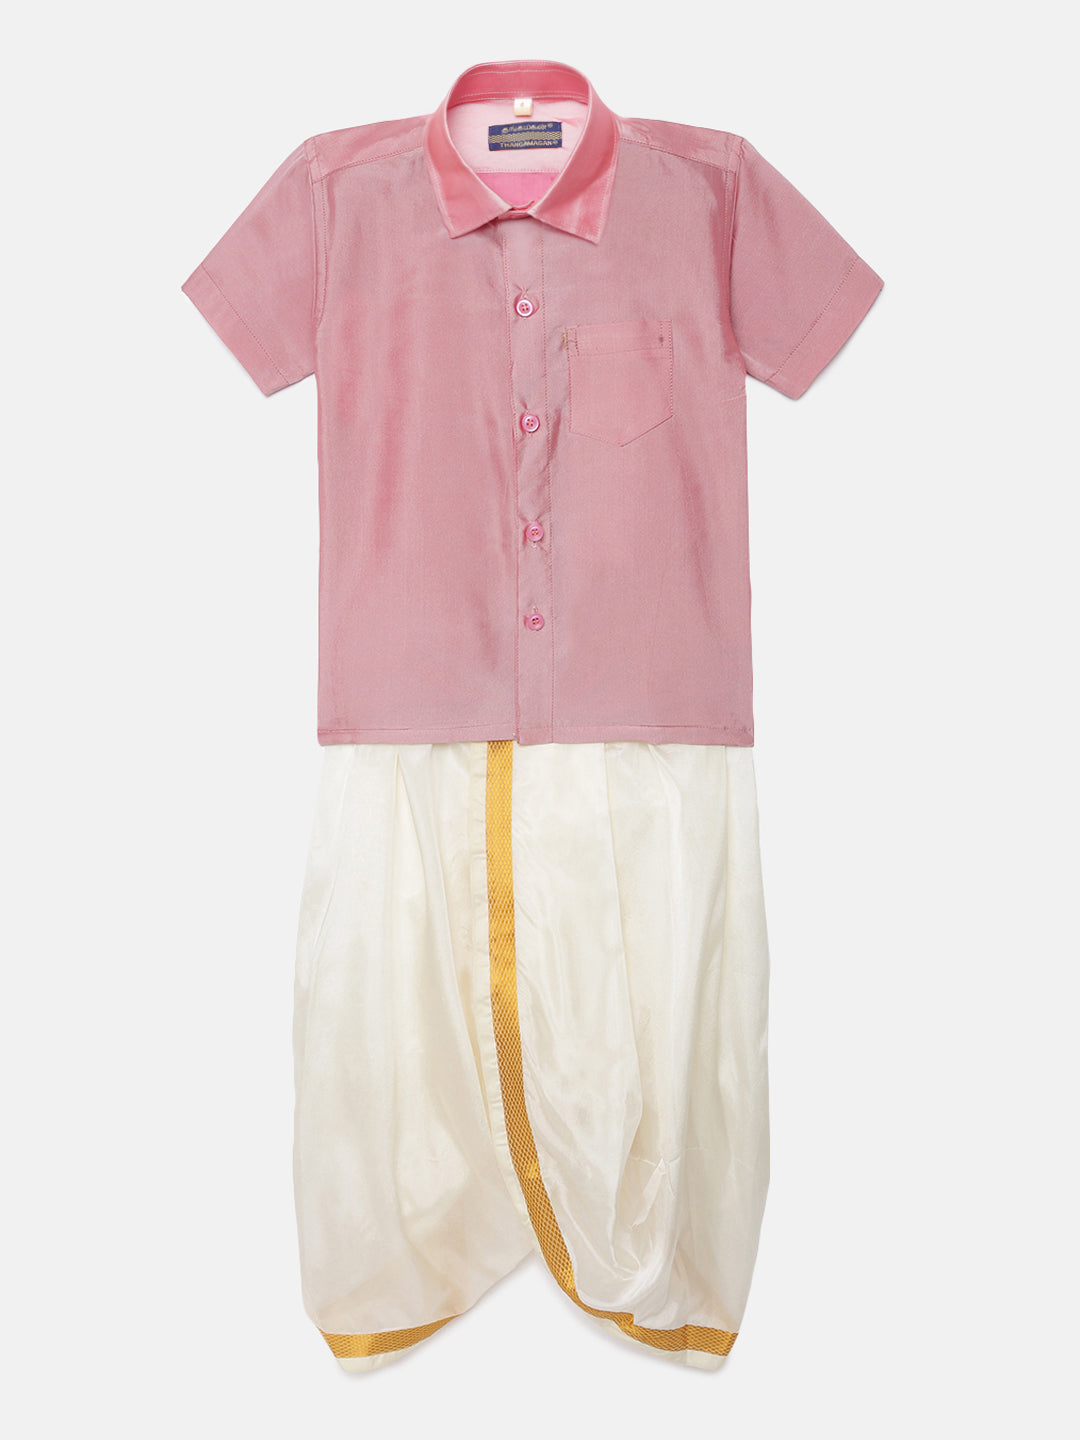 47. Boys Panjagajam & Shirt Set